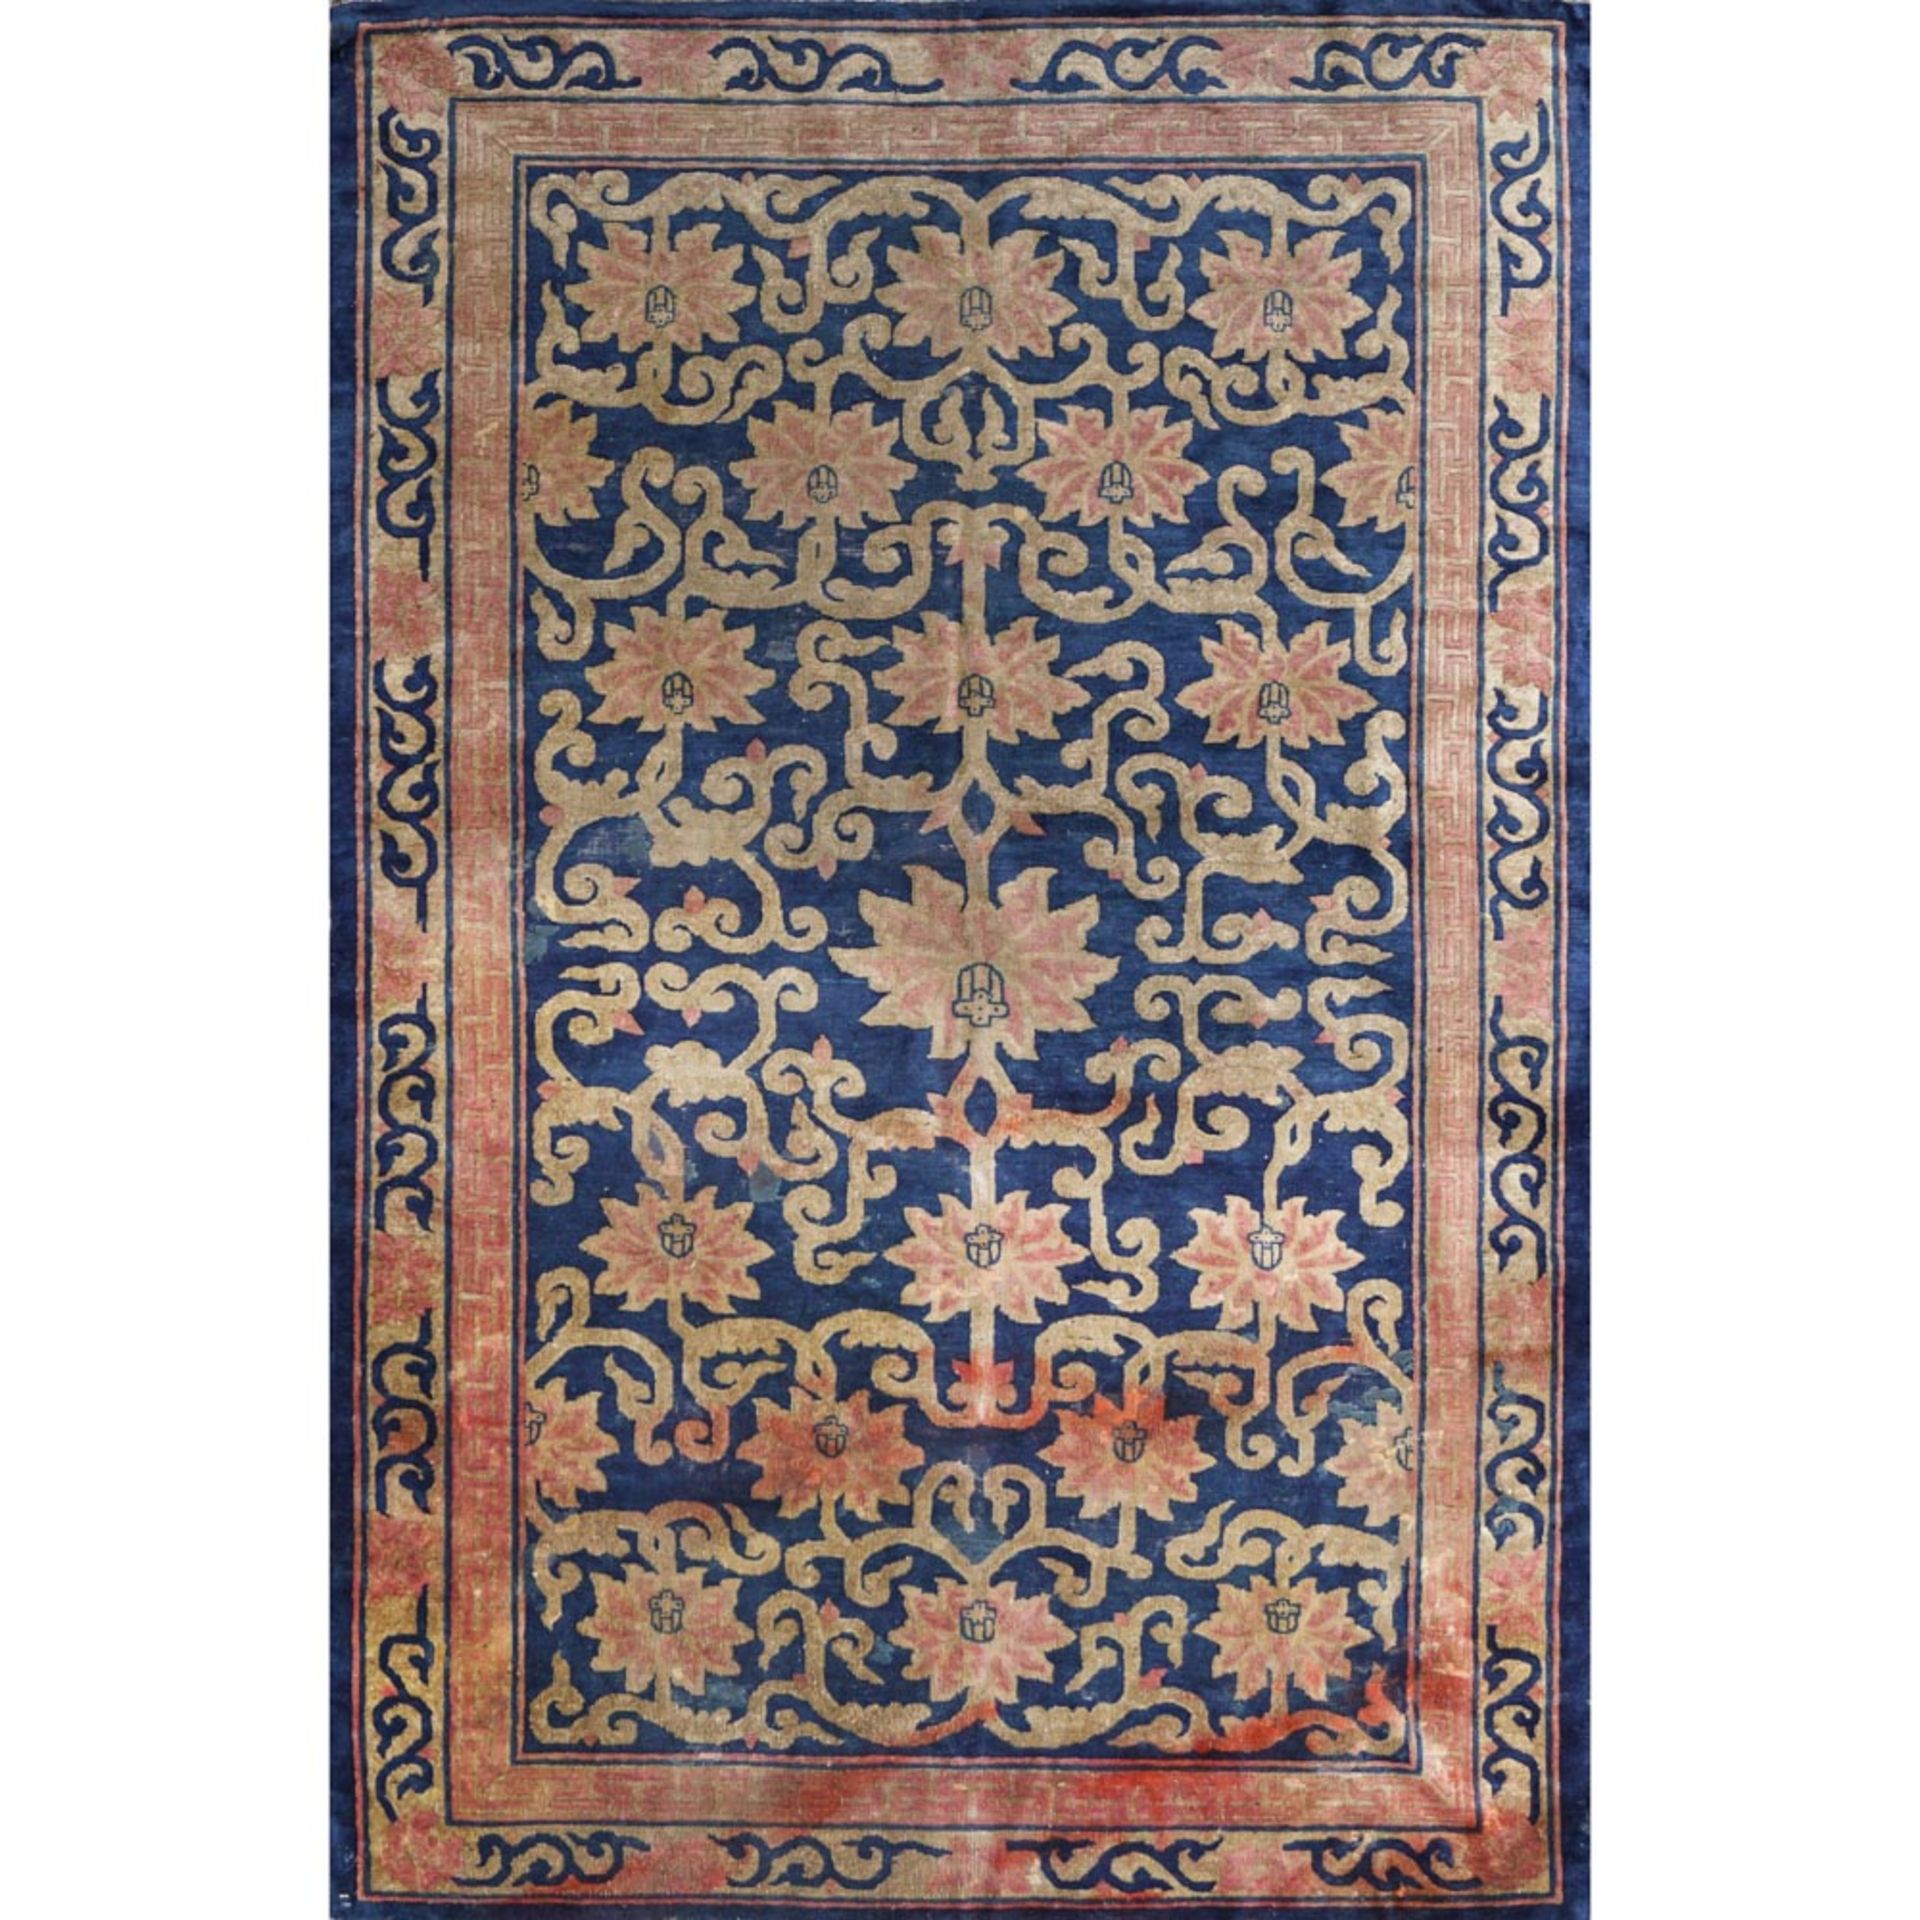 Pechino carpet China, 20th Century 230x149 cm